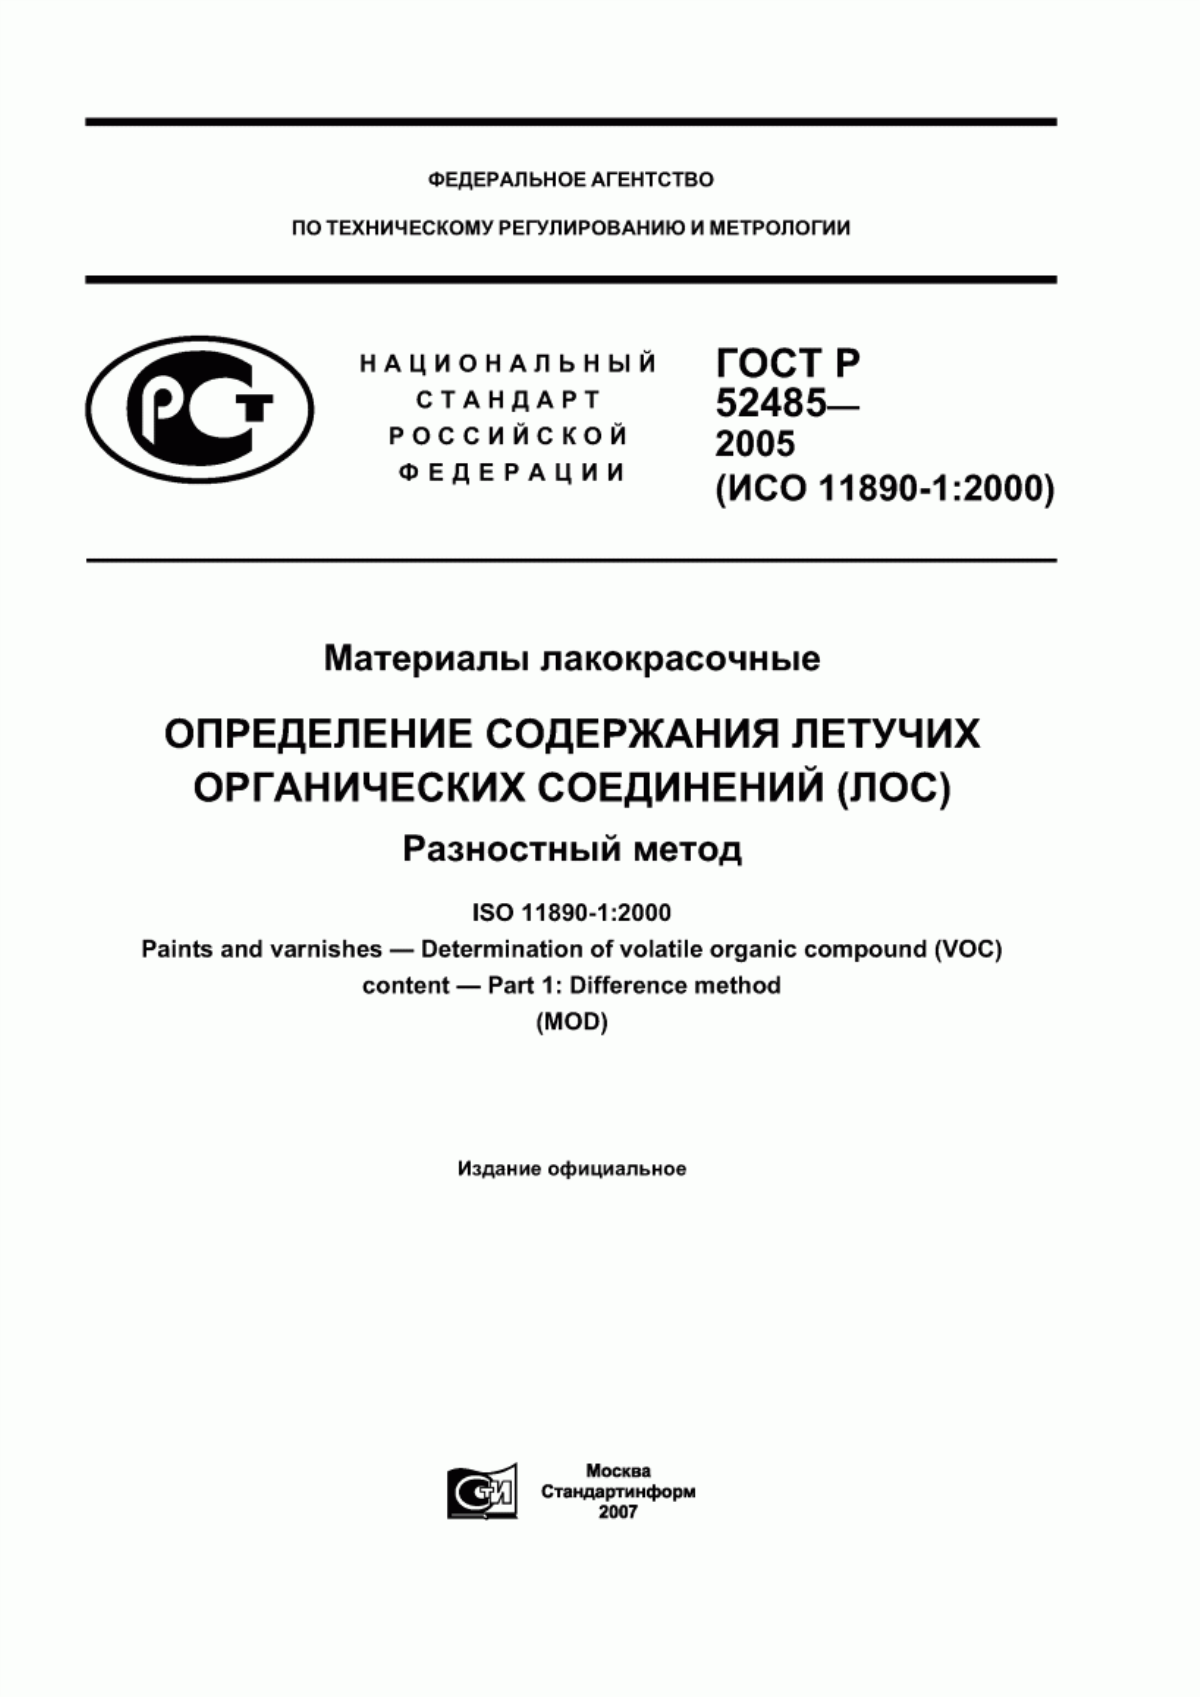 ГОСТ Р 52485-2005 Материалы лакокрасочные. Определение содержания летучих органических соединений (ЛОС). Разностный метод